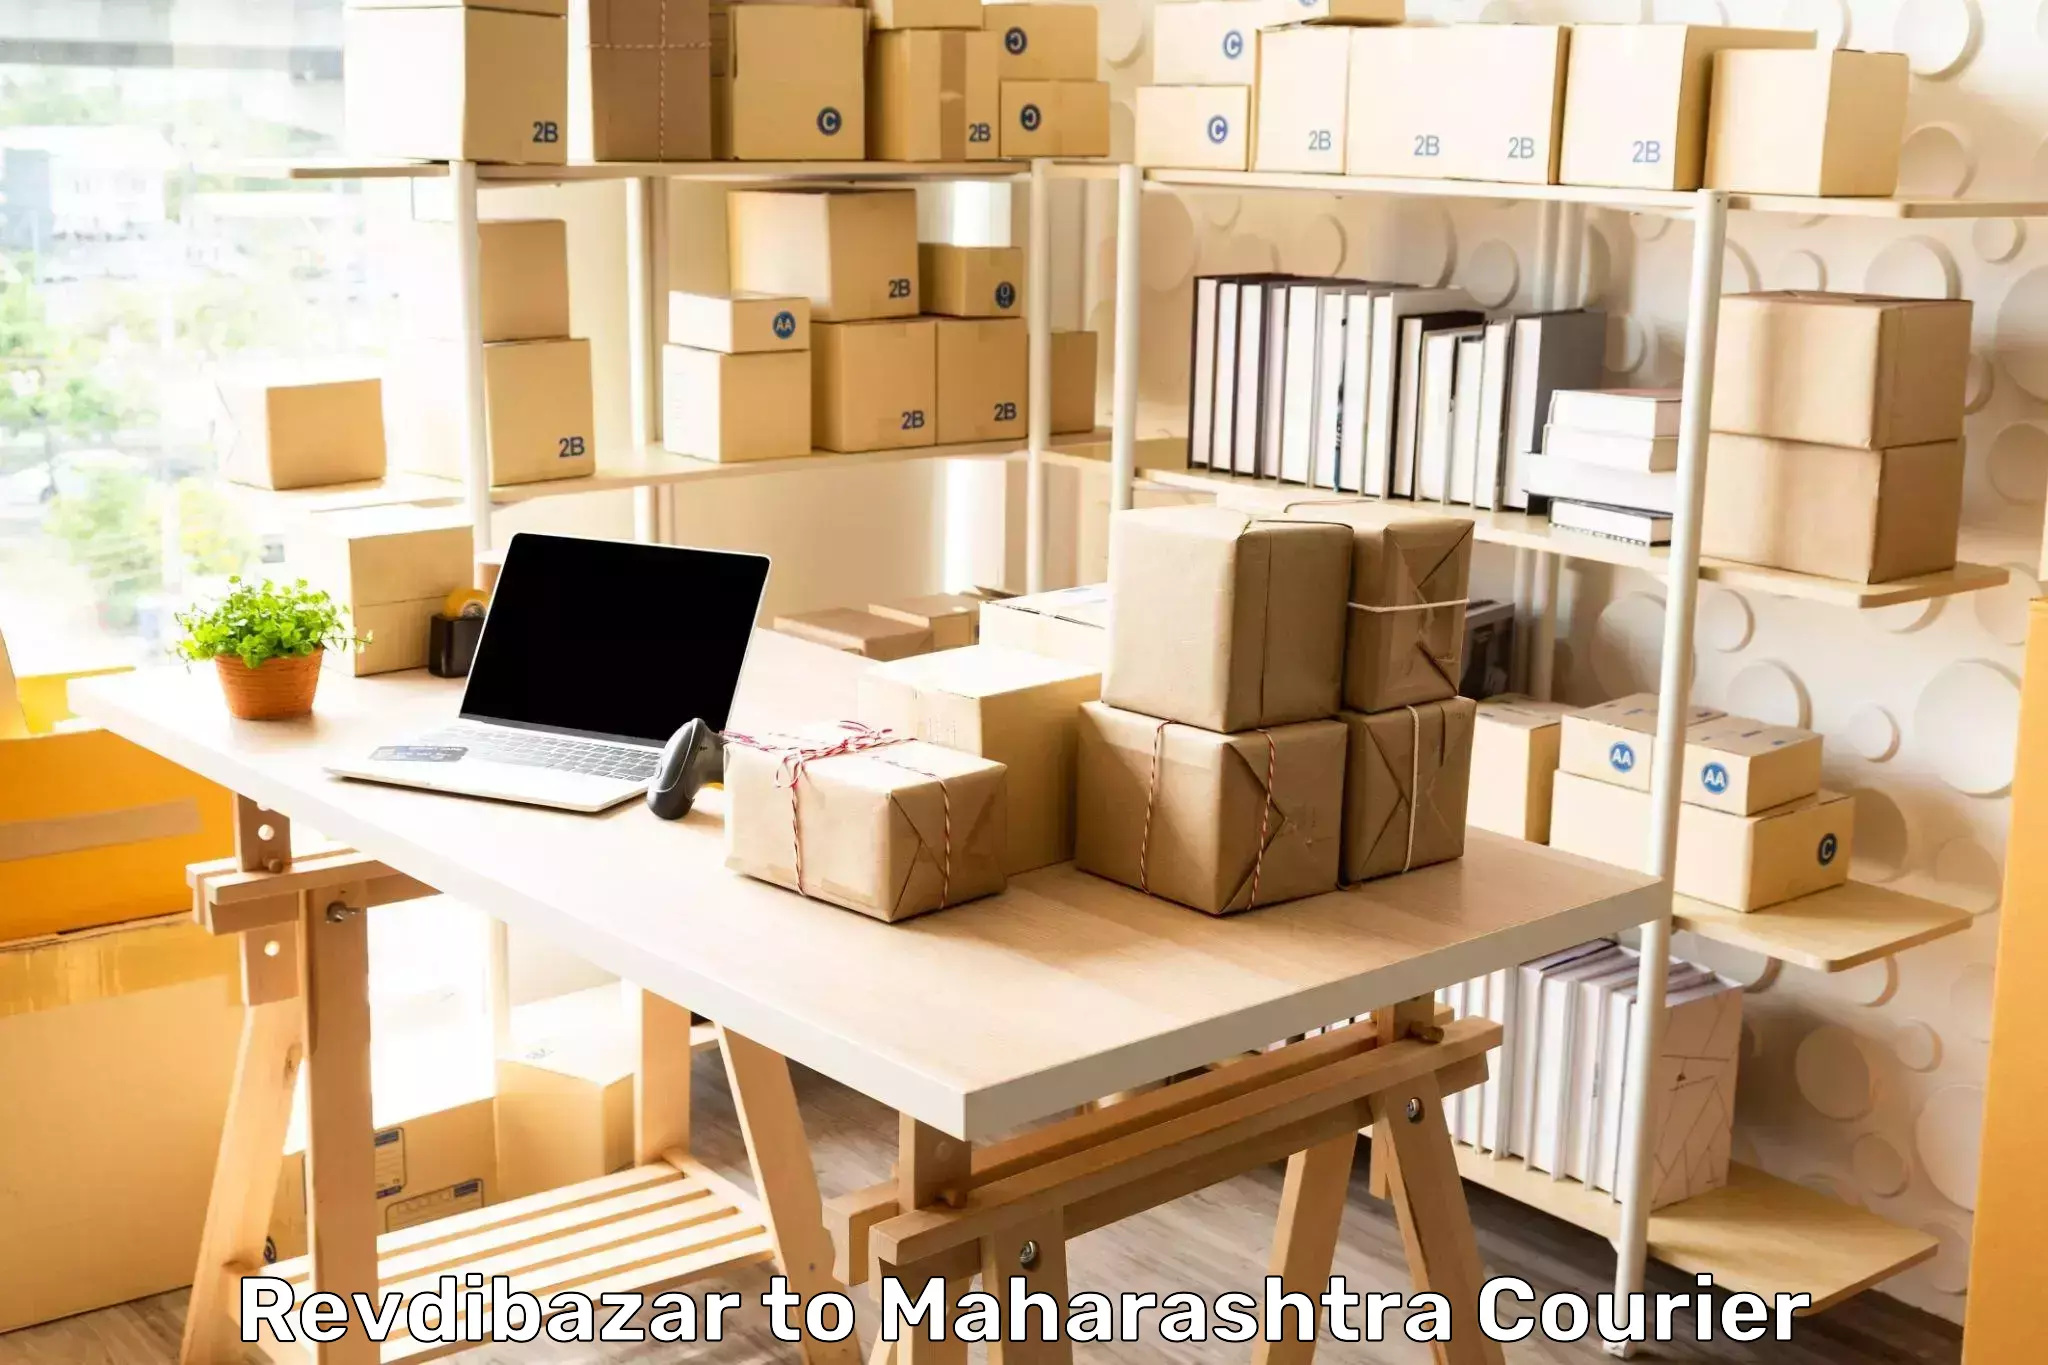 Professional courier services Revdibazar to Ballarpur